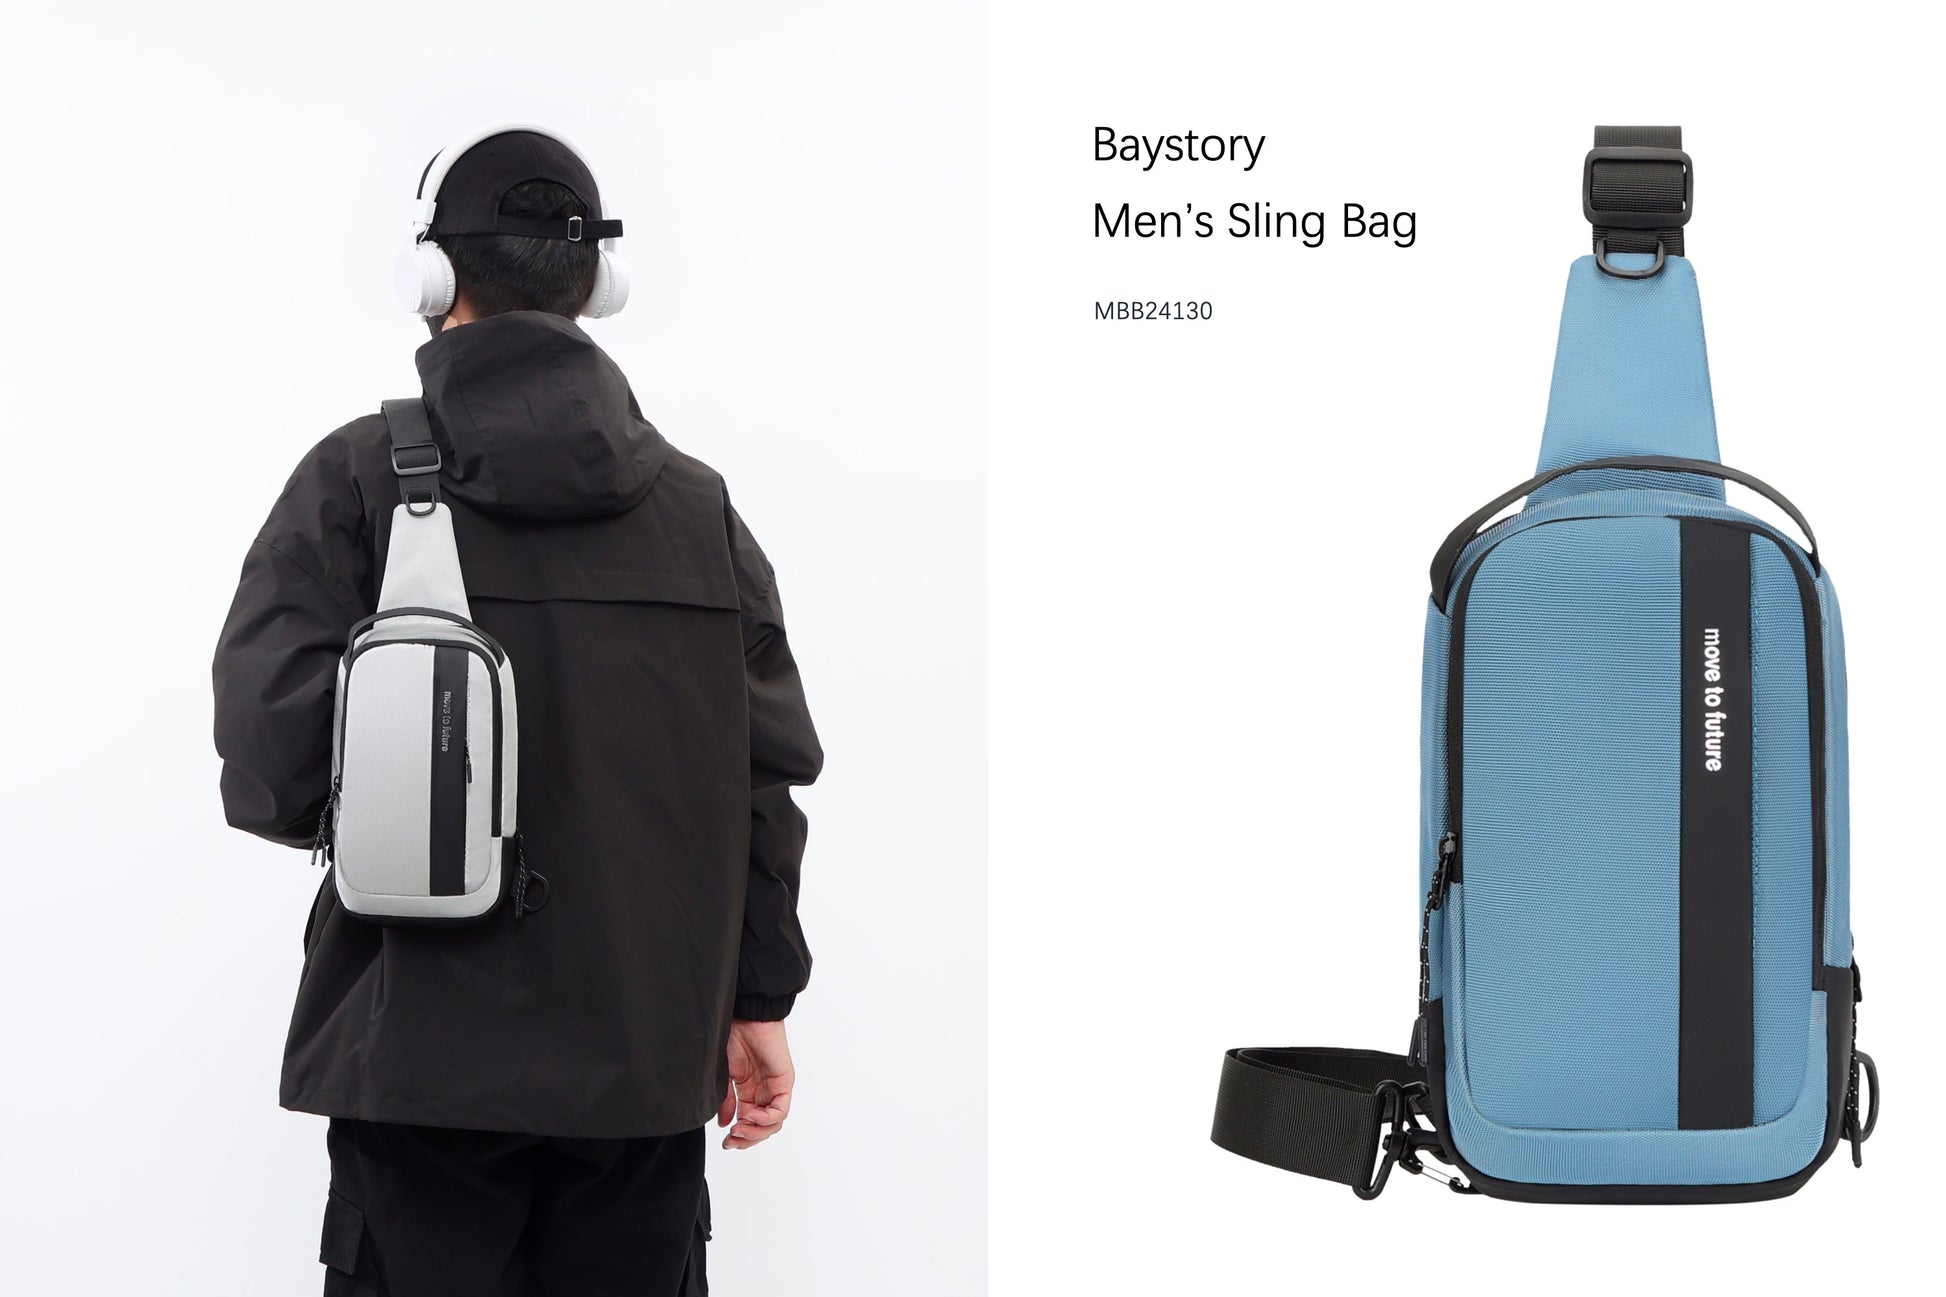 Baystory Men’s Sling Bag MBB24130 - Baystory